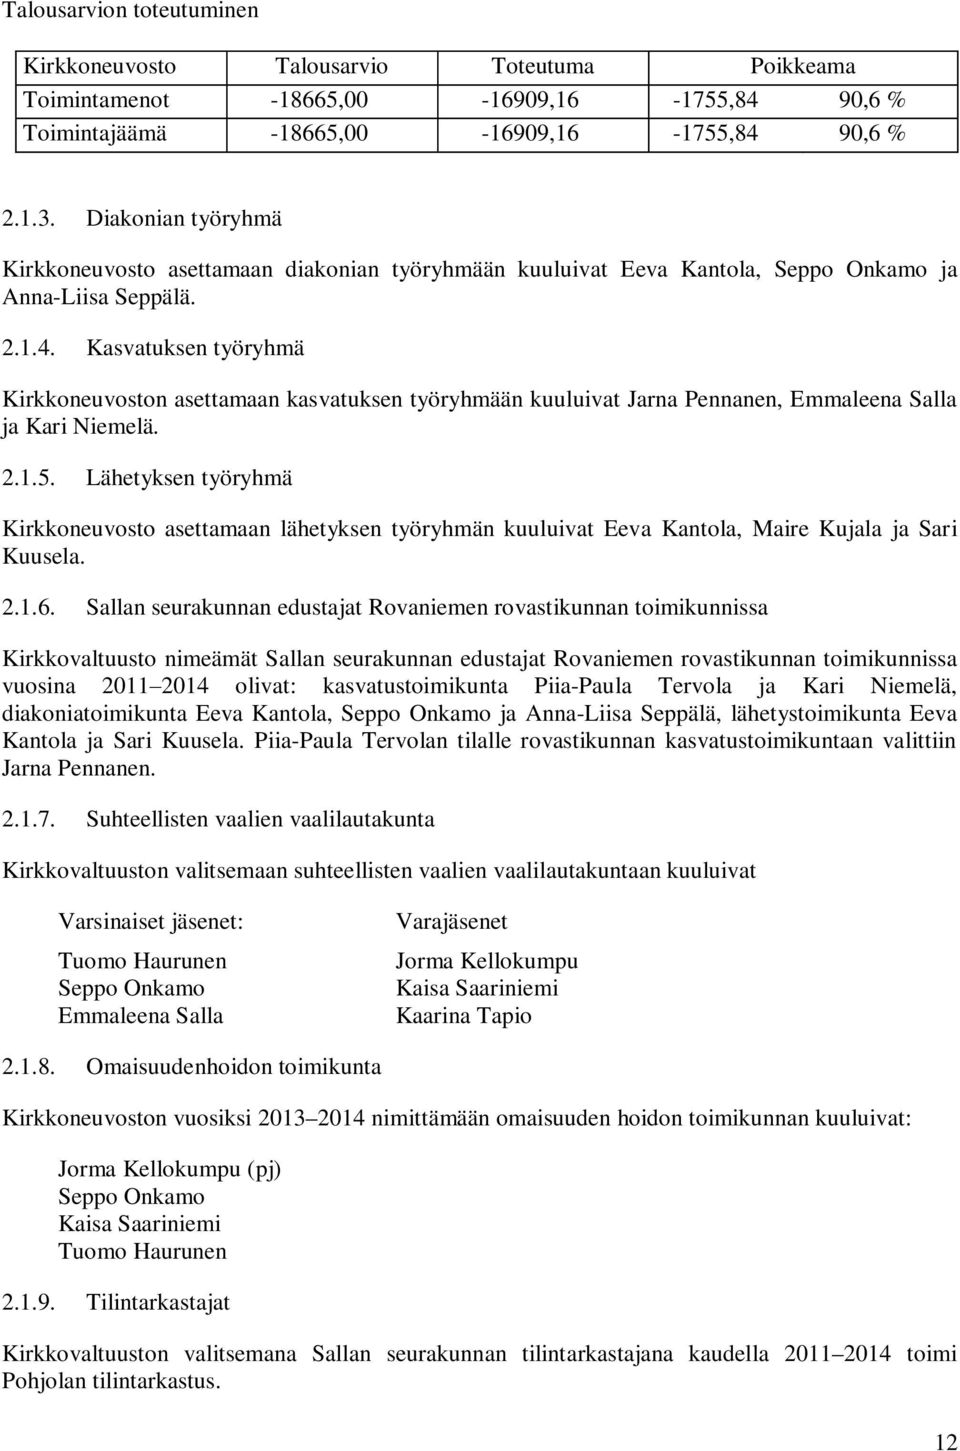 Kasvatuksen työryhmä Kirkkoneuvoston asettamaan kasvatuksen työryhmään kuuluivat Jarna Pennanen, Emmaleena Salla ja Kari Niemelä. 2.1.5.